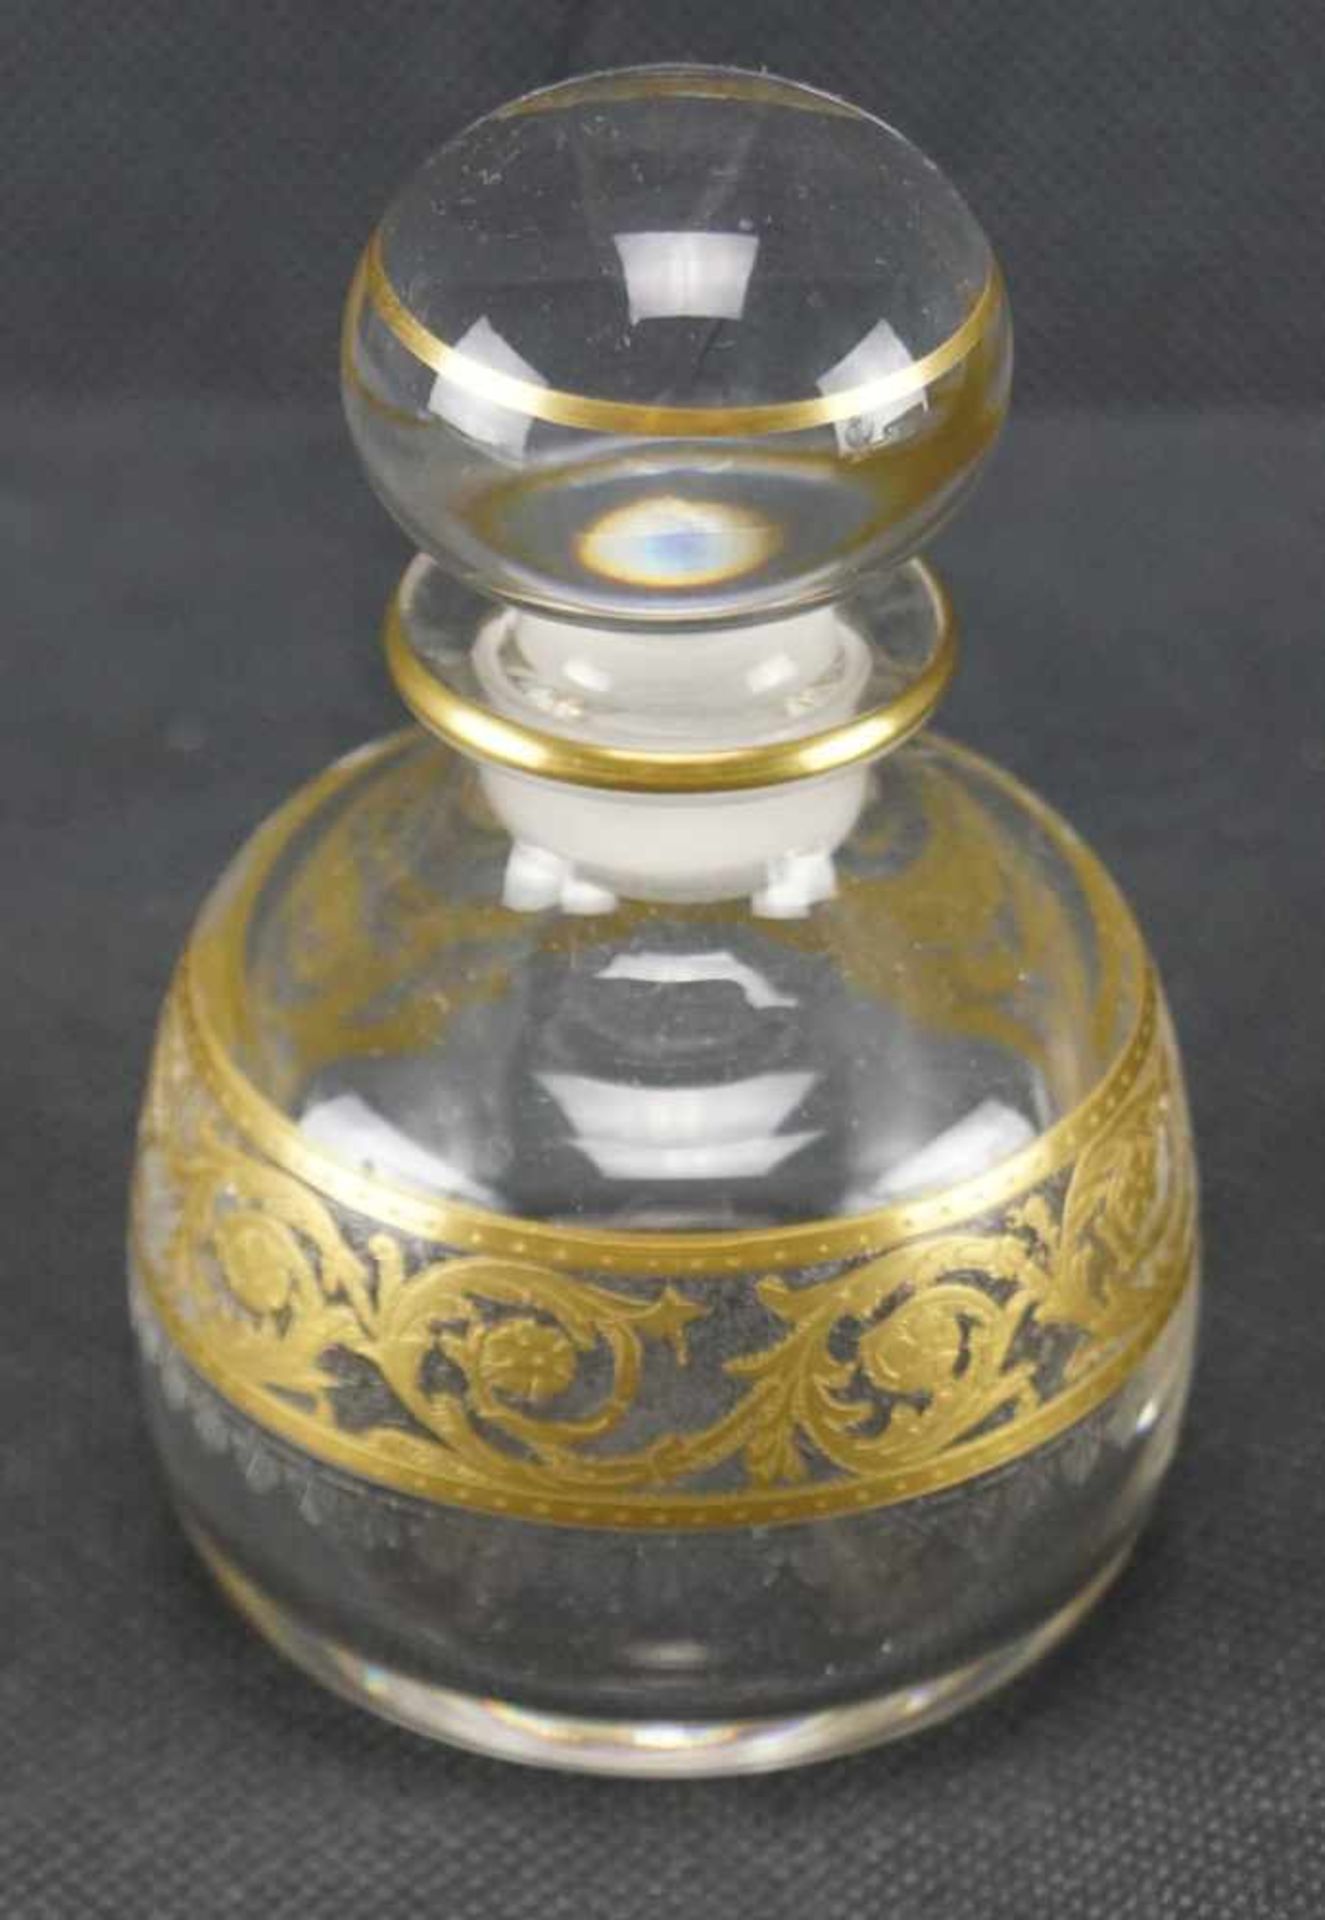 Parfumflakon, Saint Louis Mit Ätzmarke versehen, Serie Thistle Gold, Höhe 10,5 cm, in einem sehr